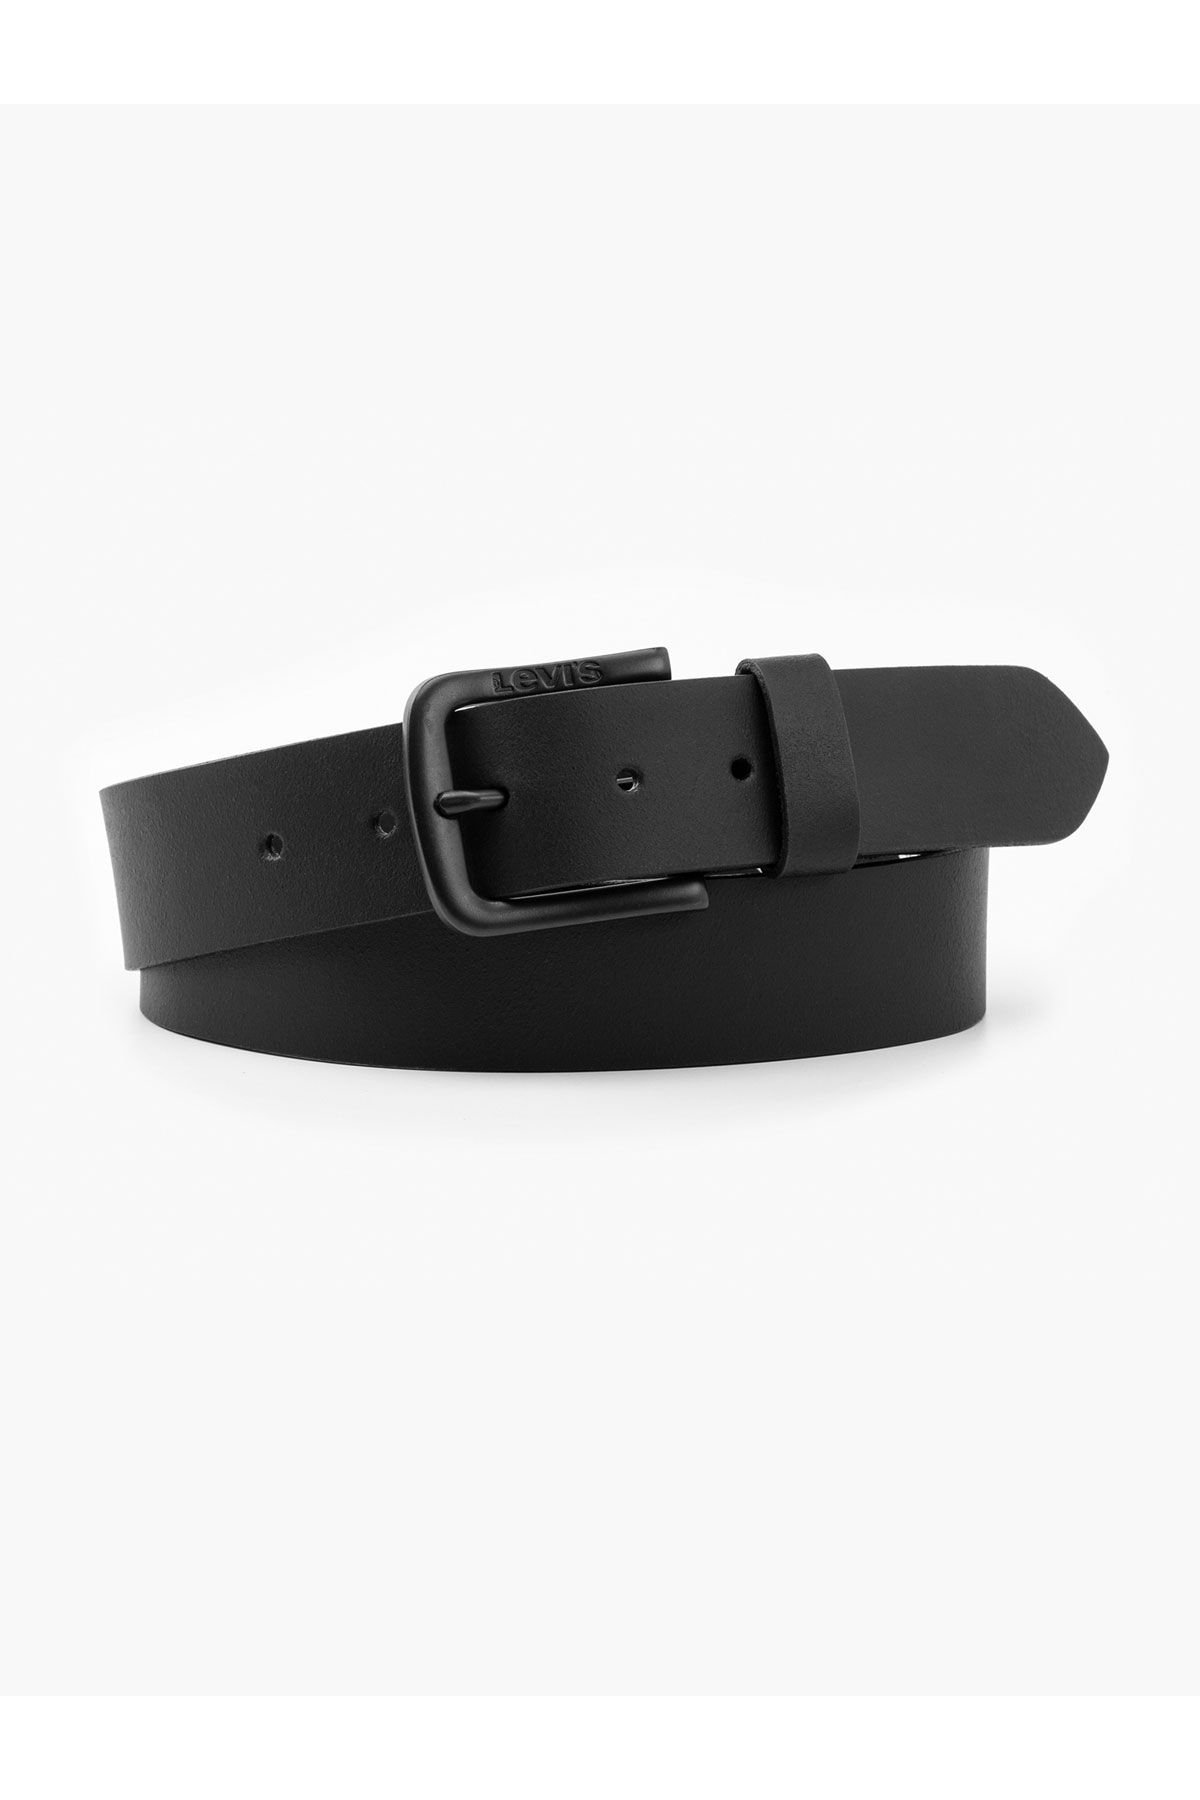 Levi's ® Levi's Men's Contrast Belt Black Men Belts